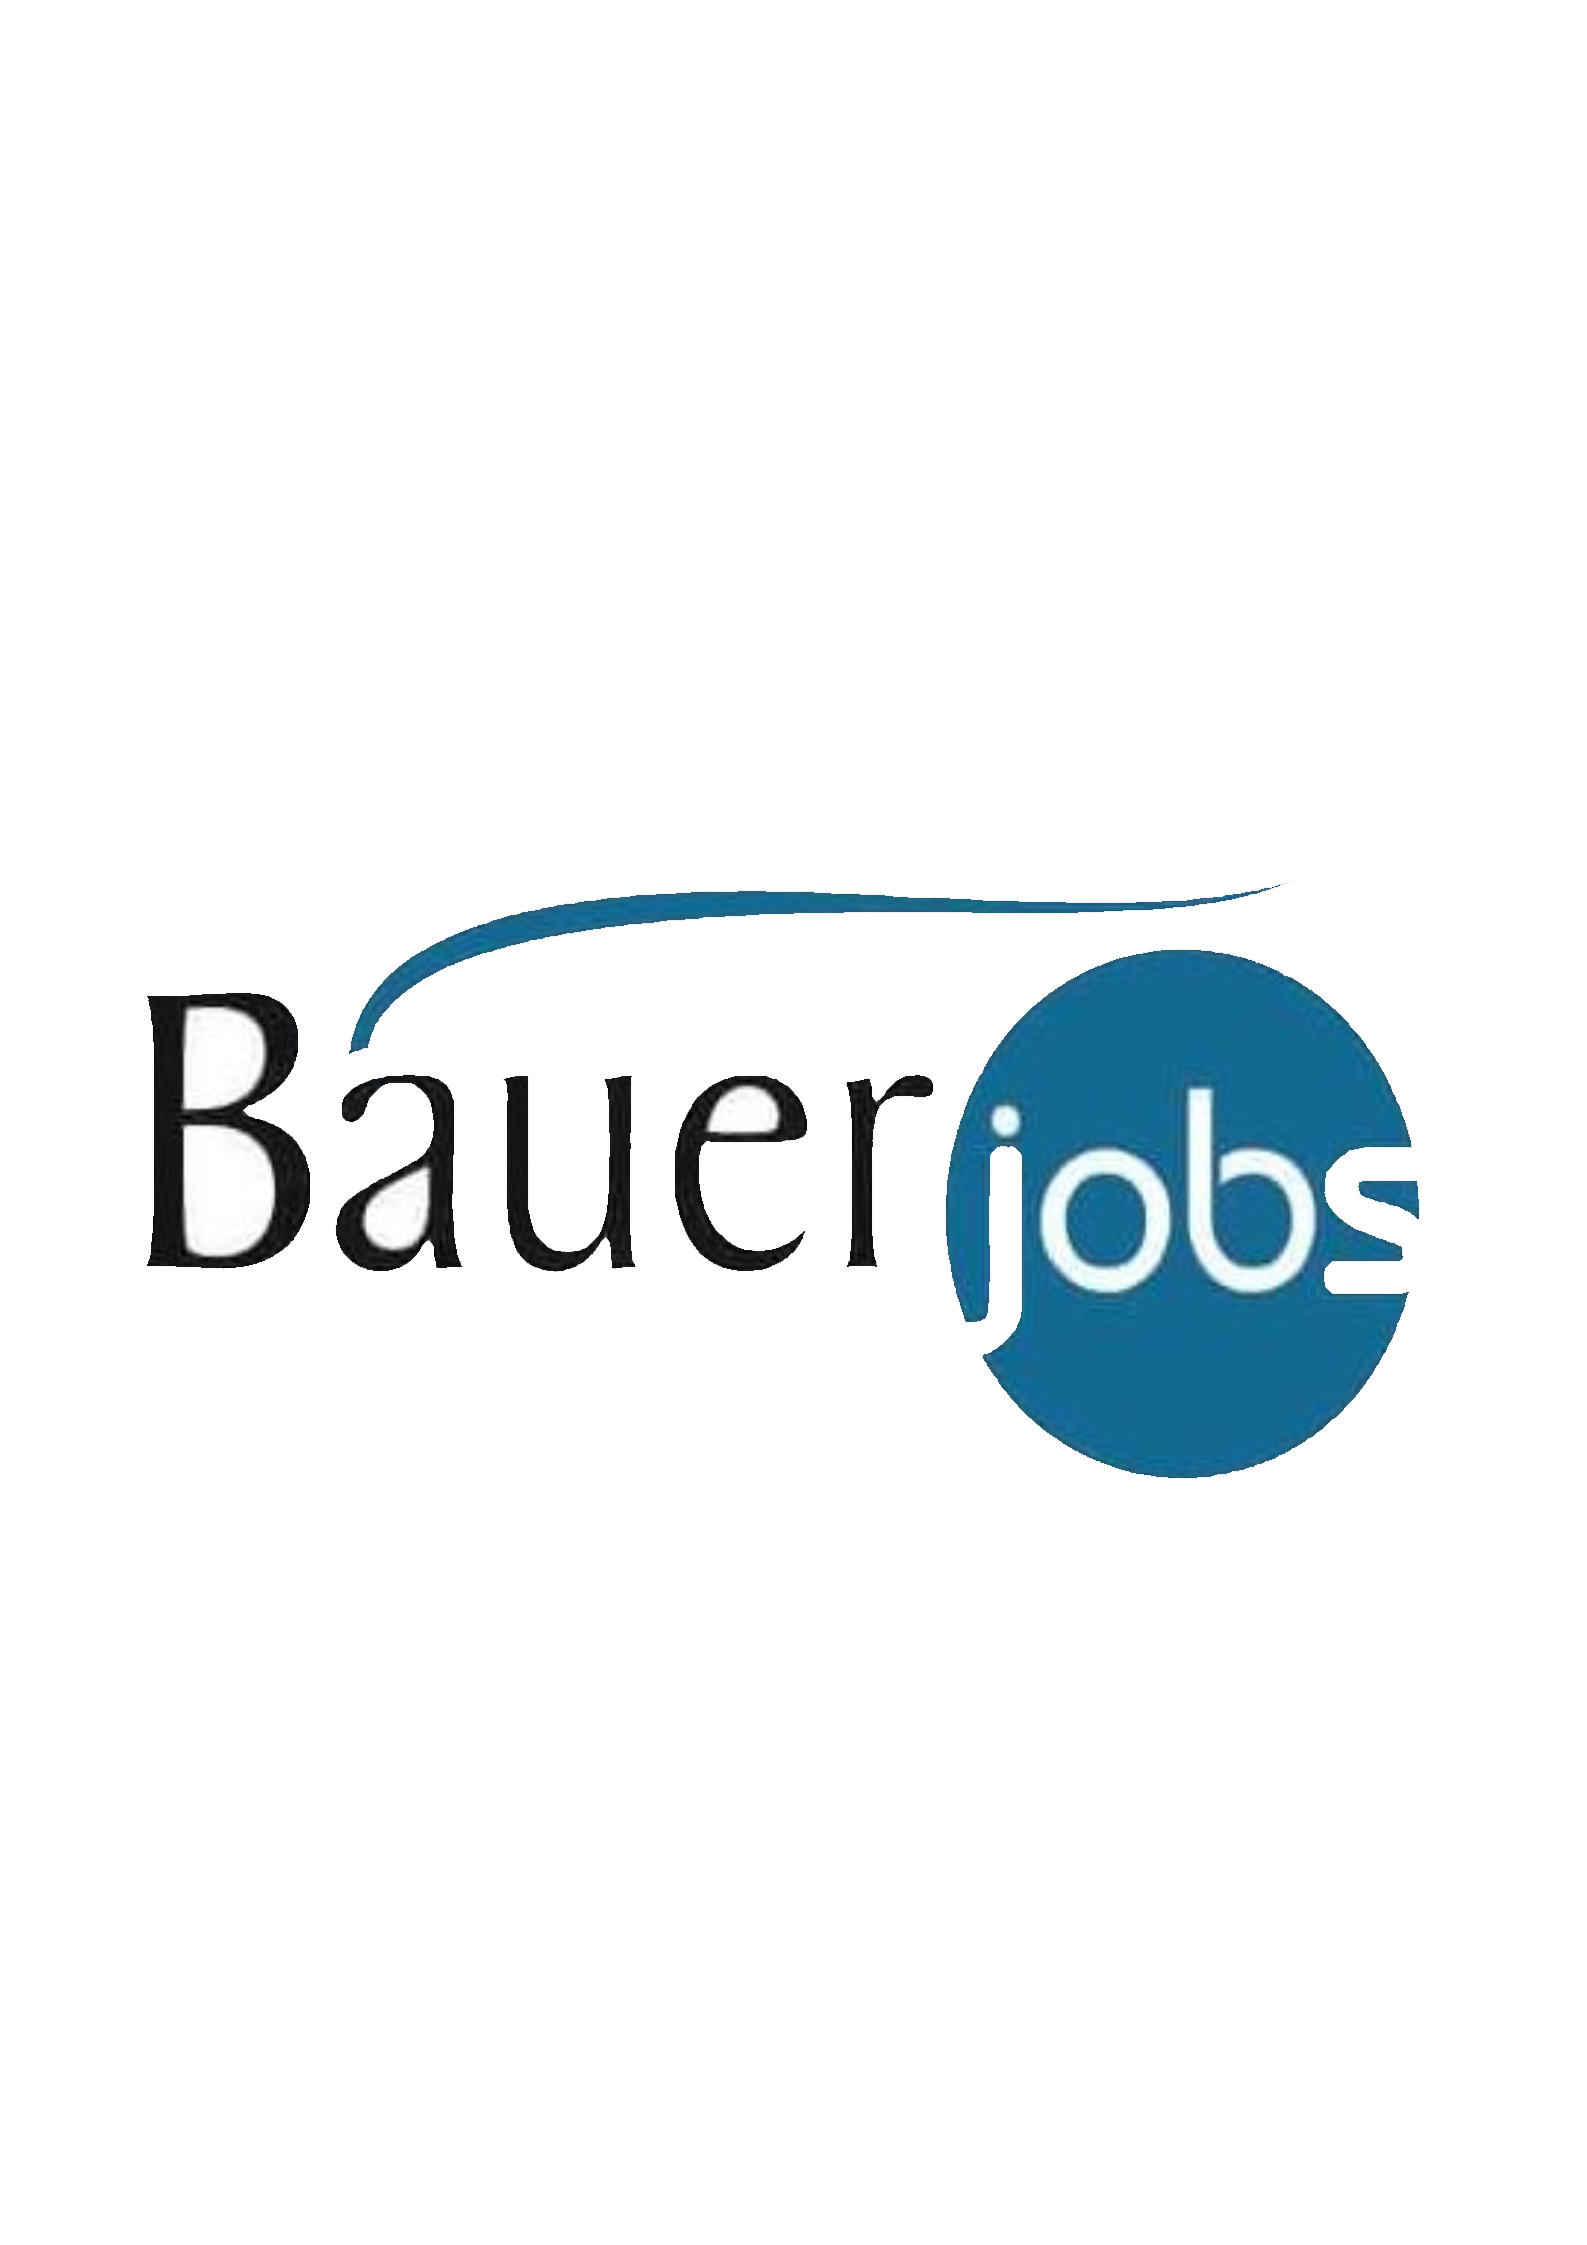 Bauer & Bauer Jobs